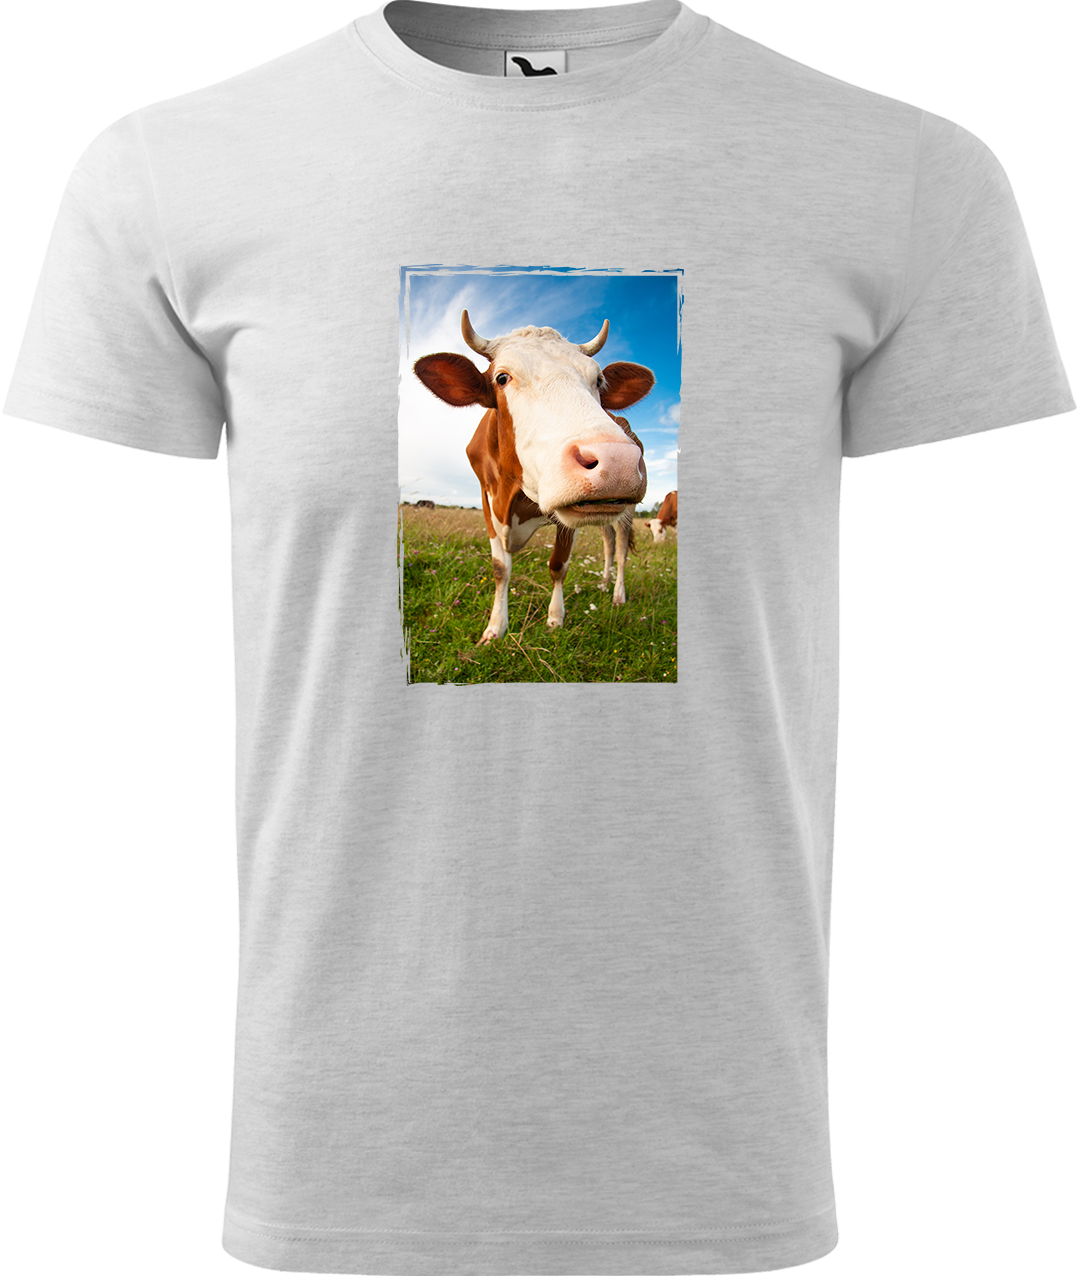 Pánské tričko s krávou - Na pastvě Velikost: S, Barva: Světle šedý melír (03), Střih: pánský